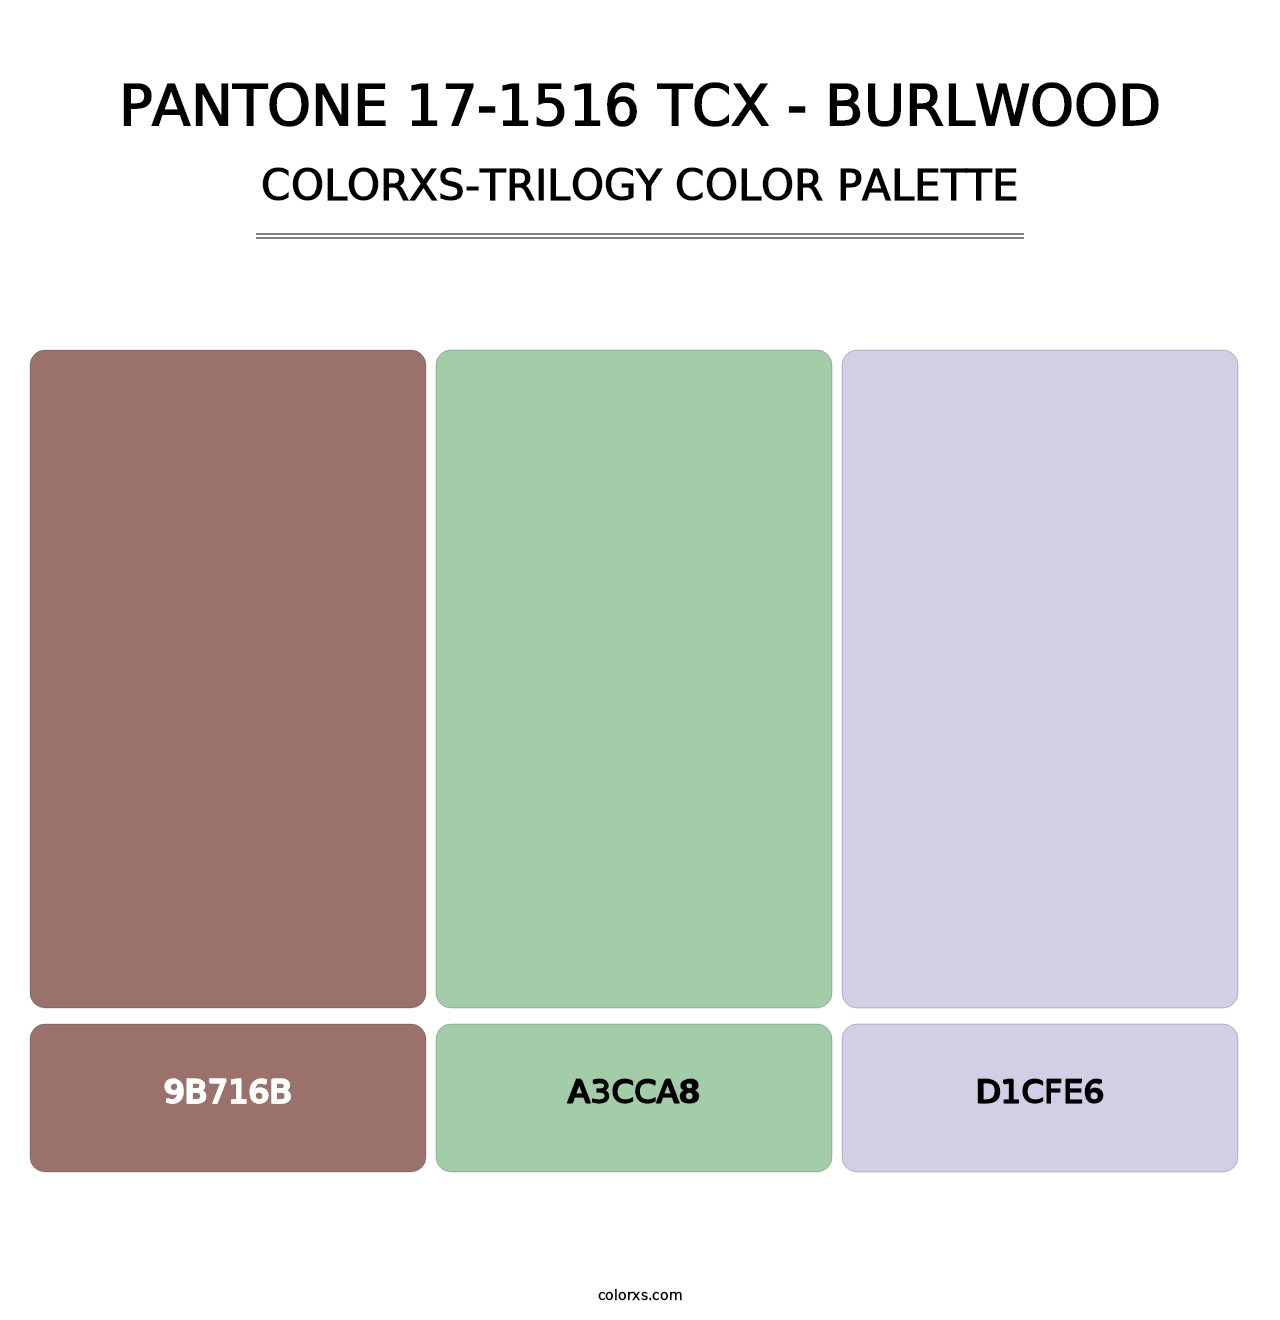 PANTONE 17-1516 TCX - Burlwood - Colorxs Trilogy Palette